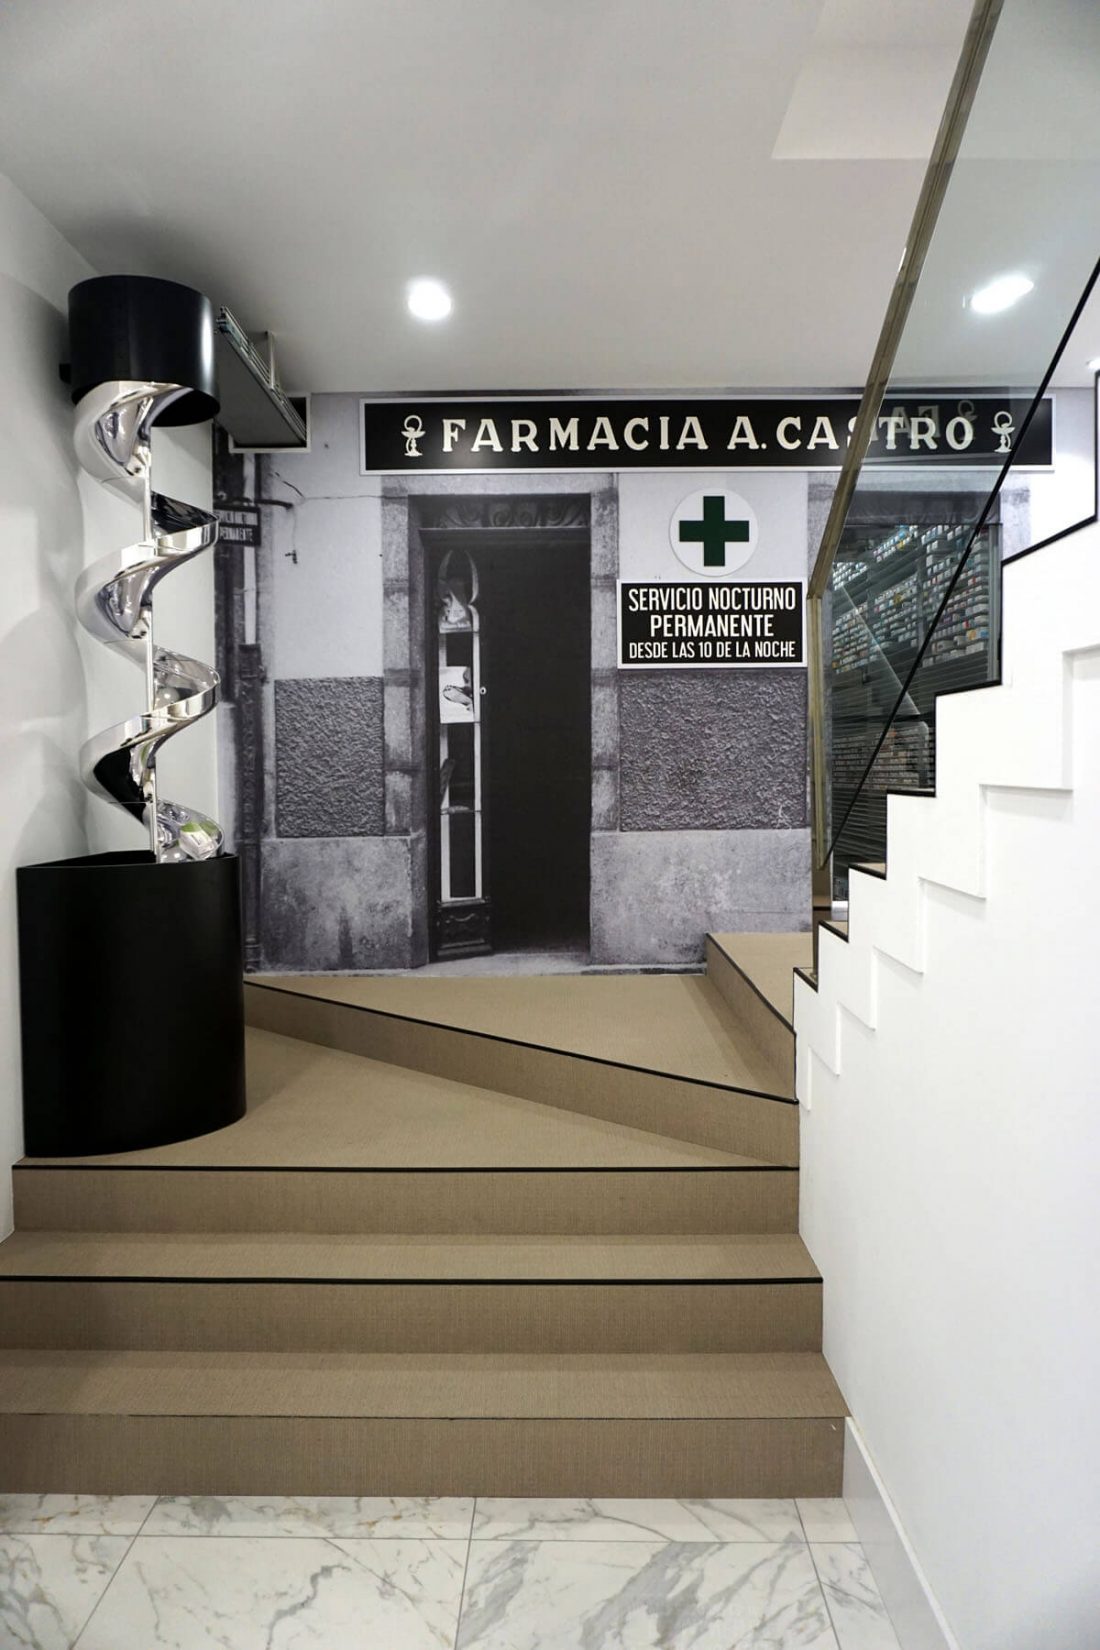 Farmacia Castro